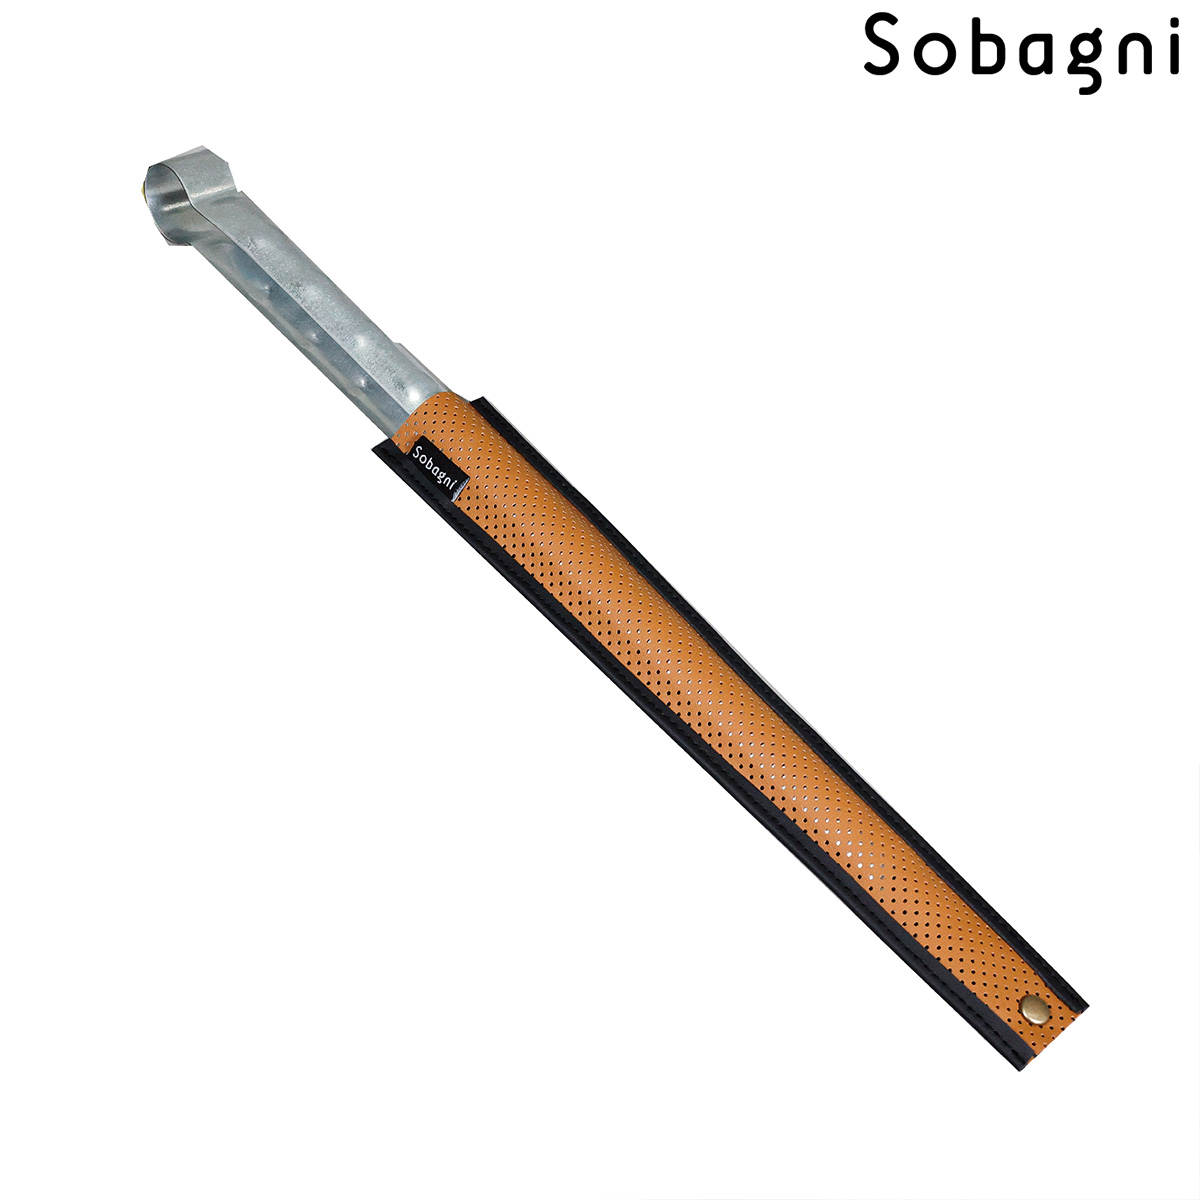 ソバニ公式 HibasamiCover-キャンプギア3号- 火ばさみカバー